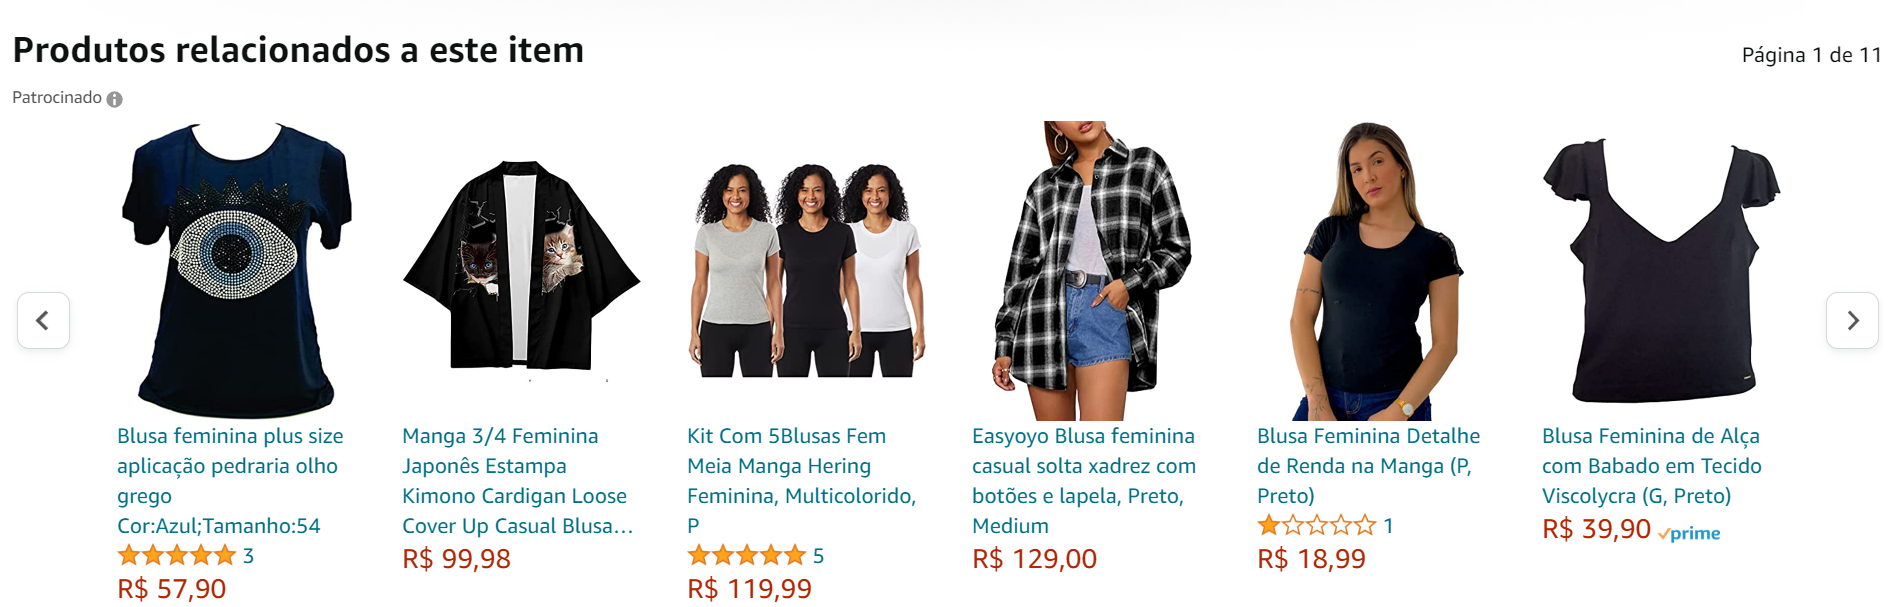 Recomendação de produtos personalizados no site da Amazon